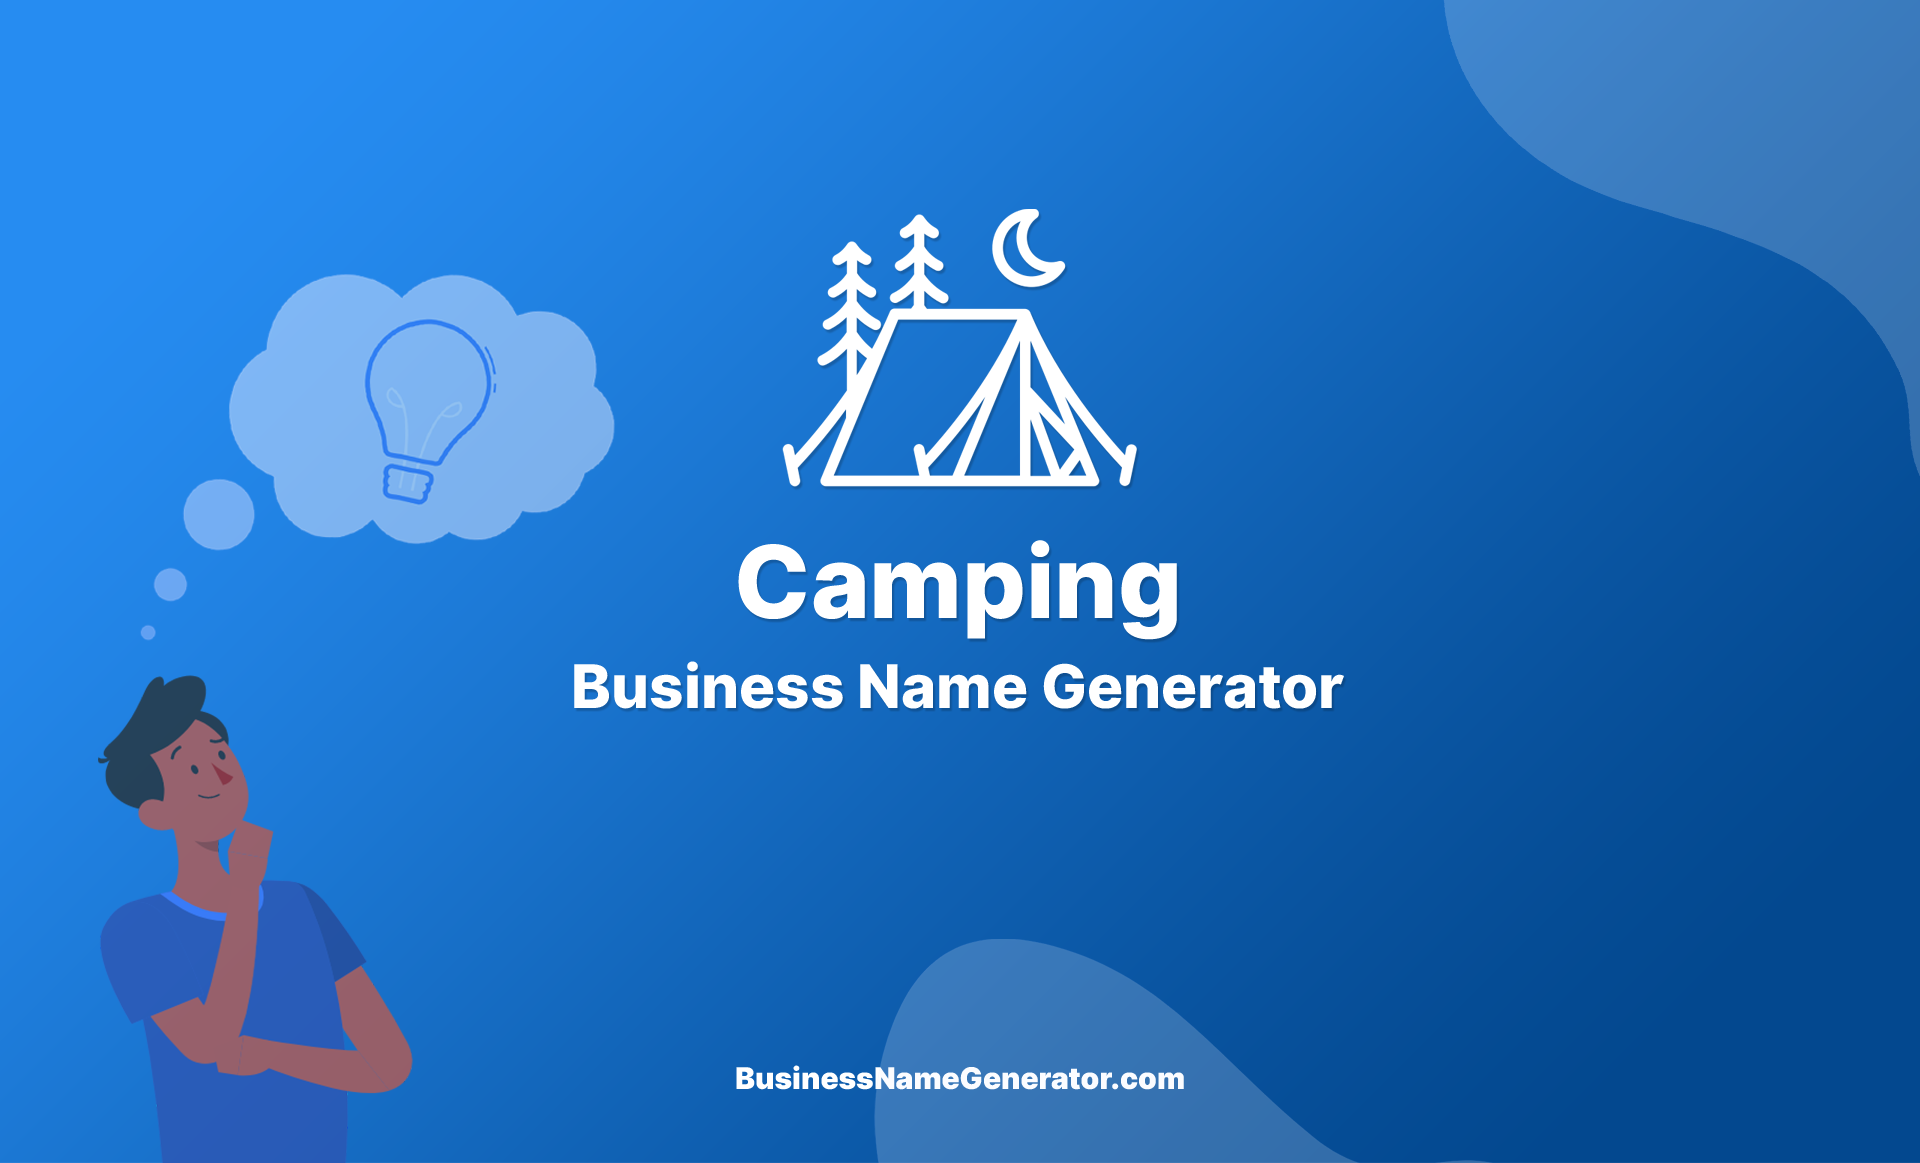 Camping Business Name Generator